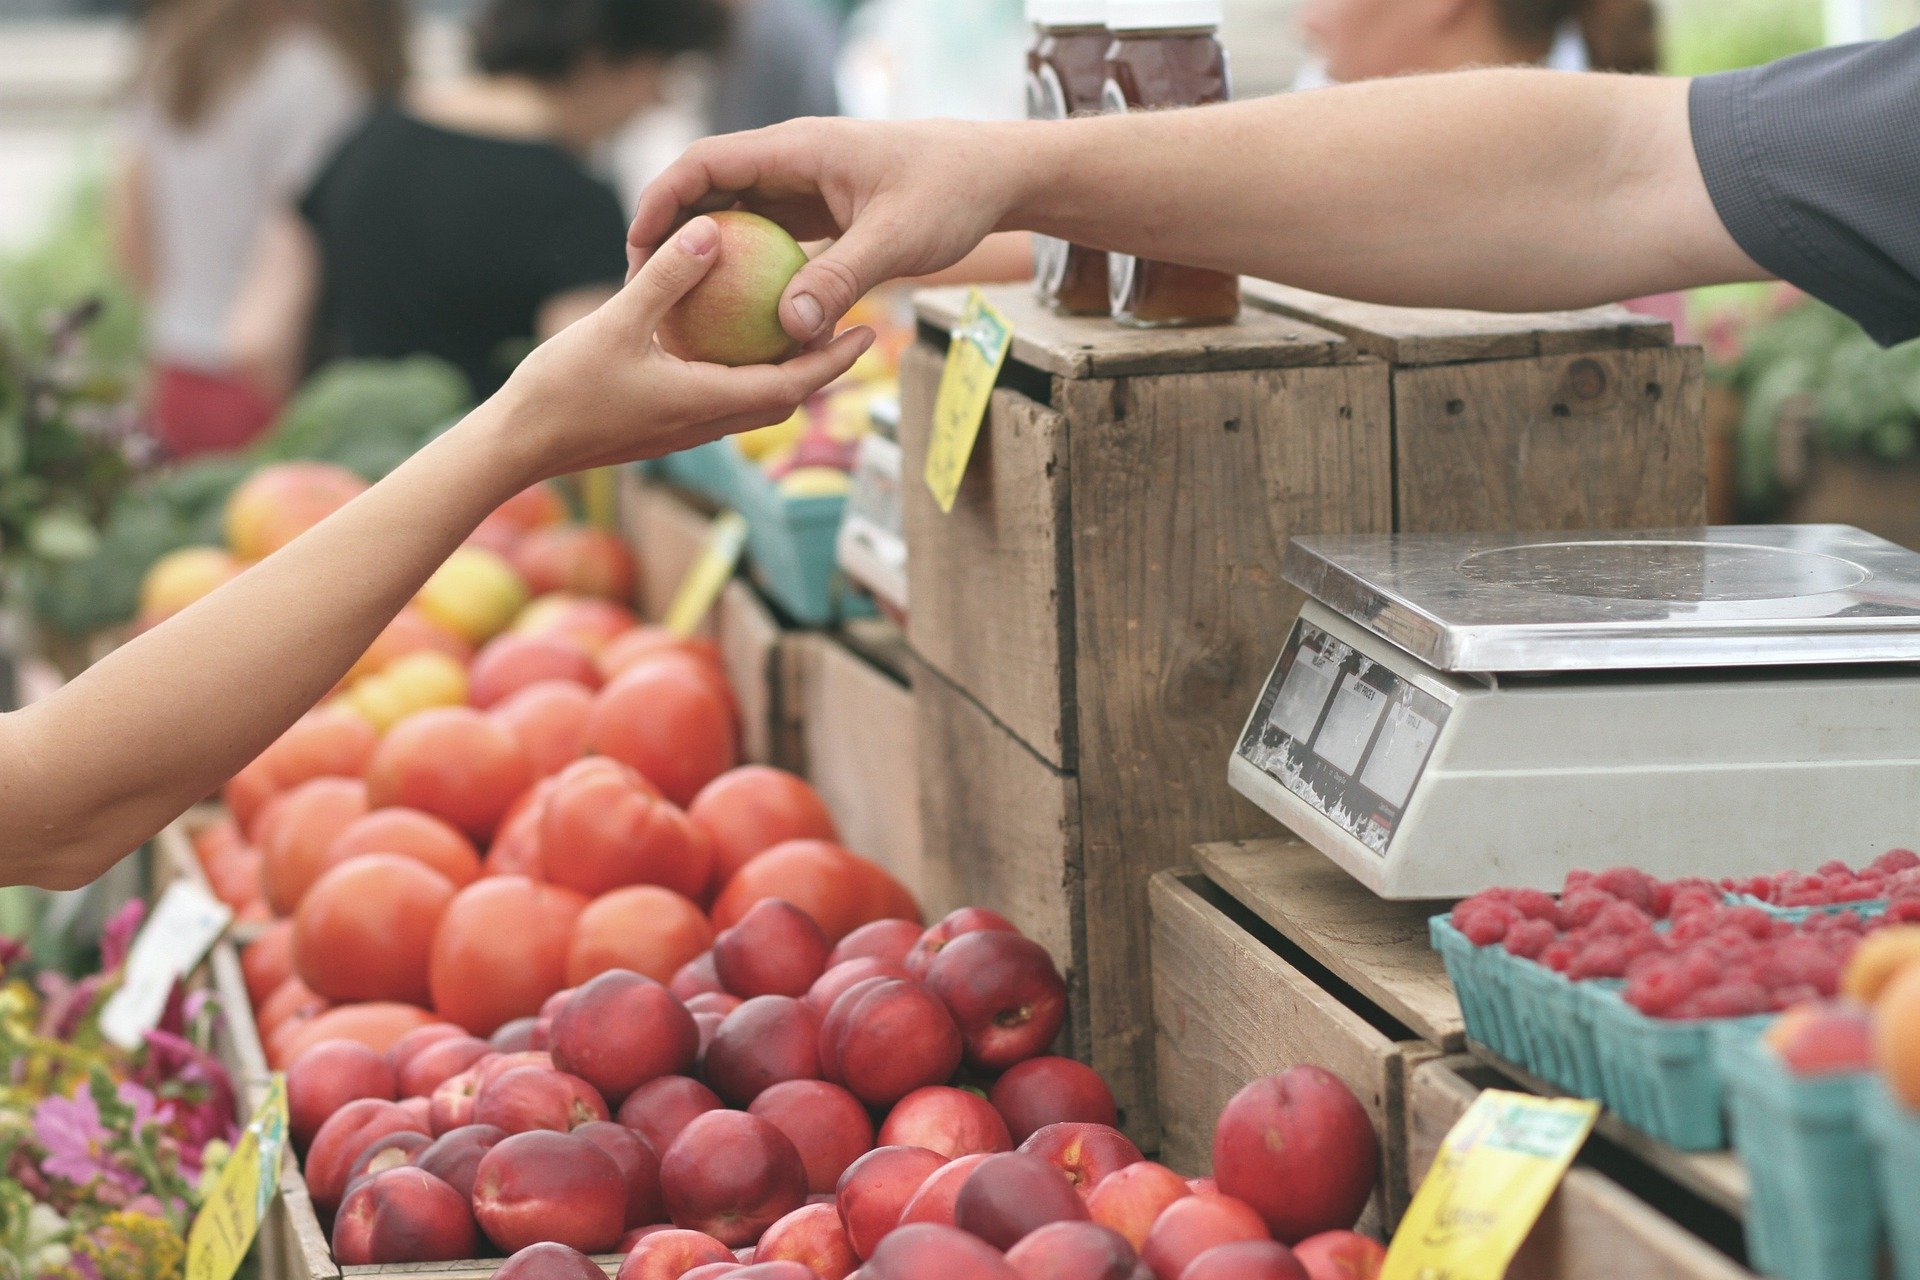  Isărescu: Unele produse agroalimentare, mai ales legume, fructe, ouă, vor avea scăderi de preţuri